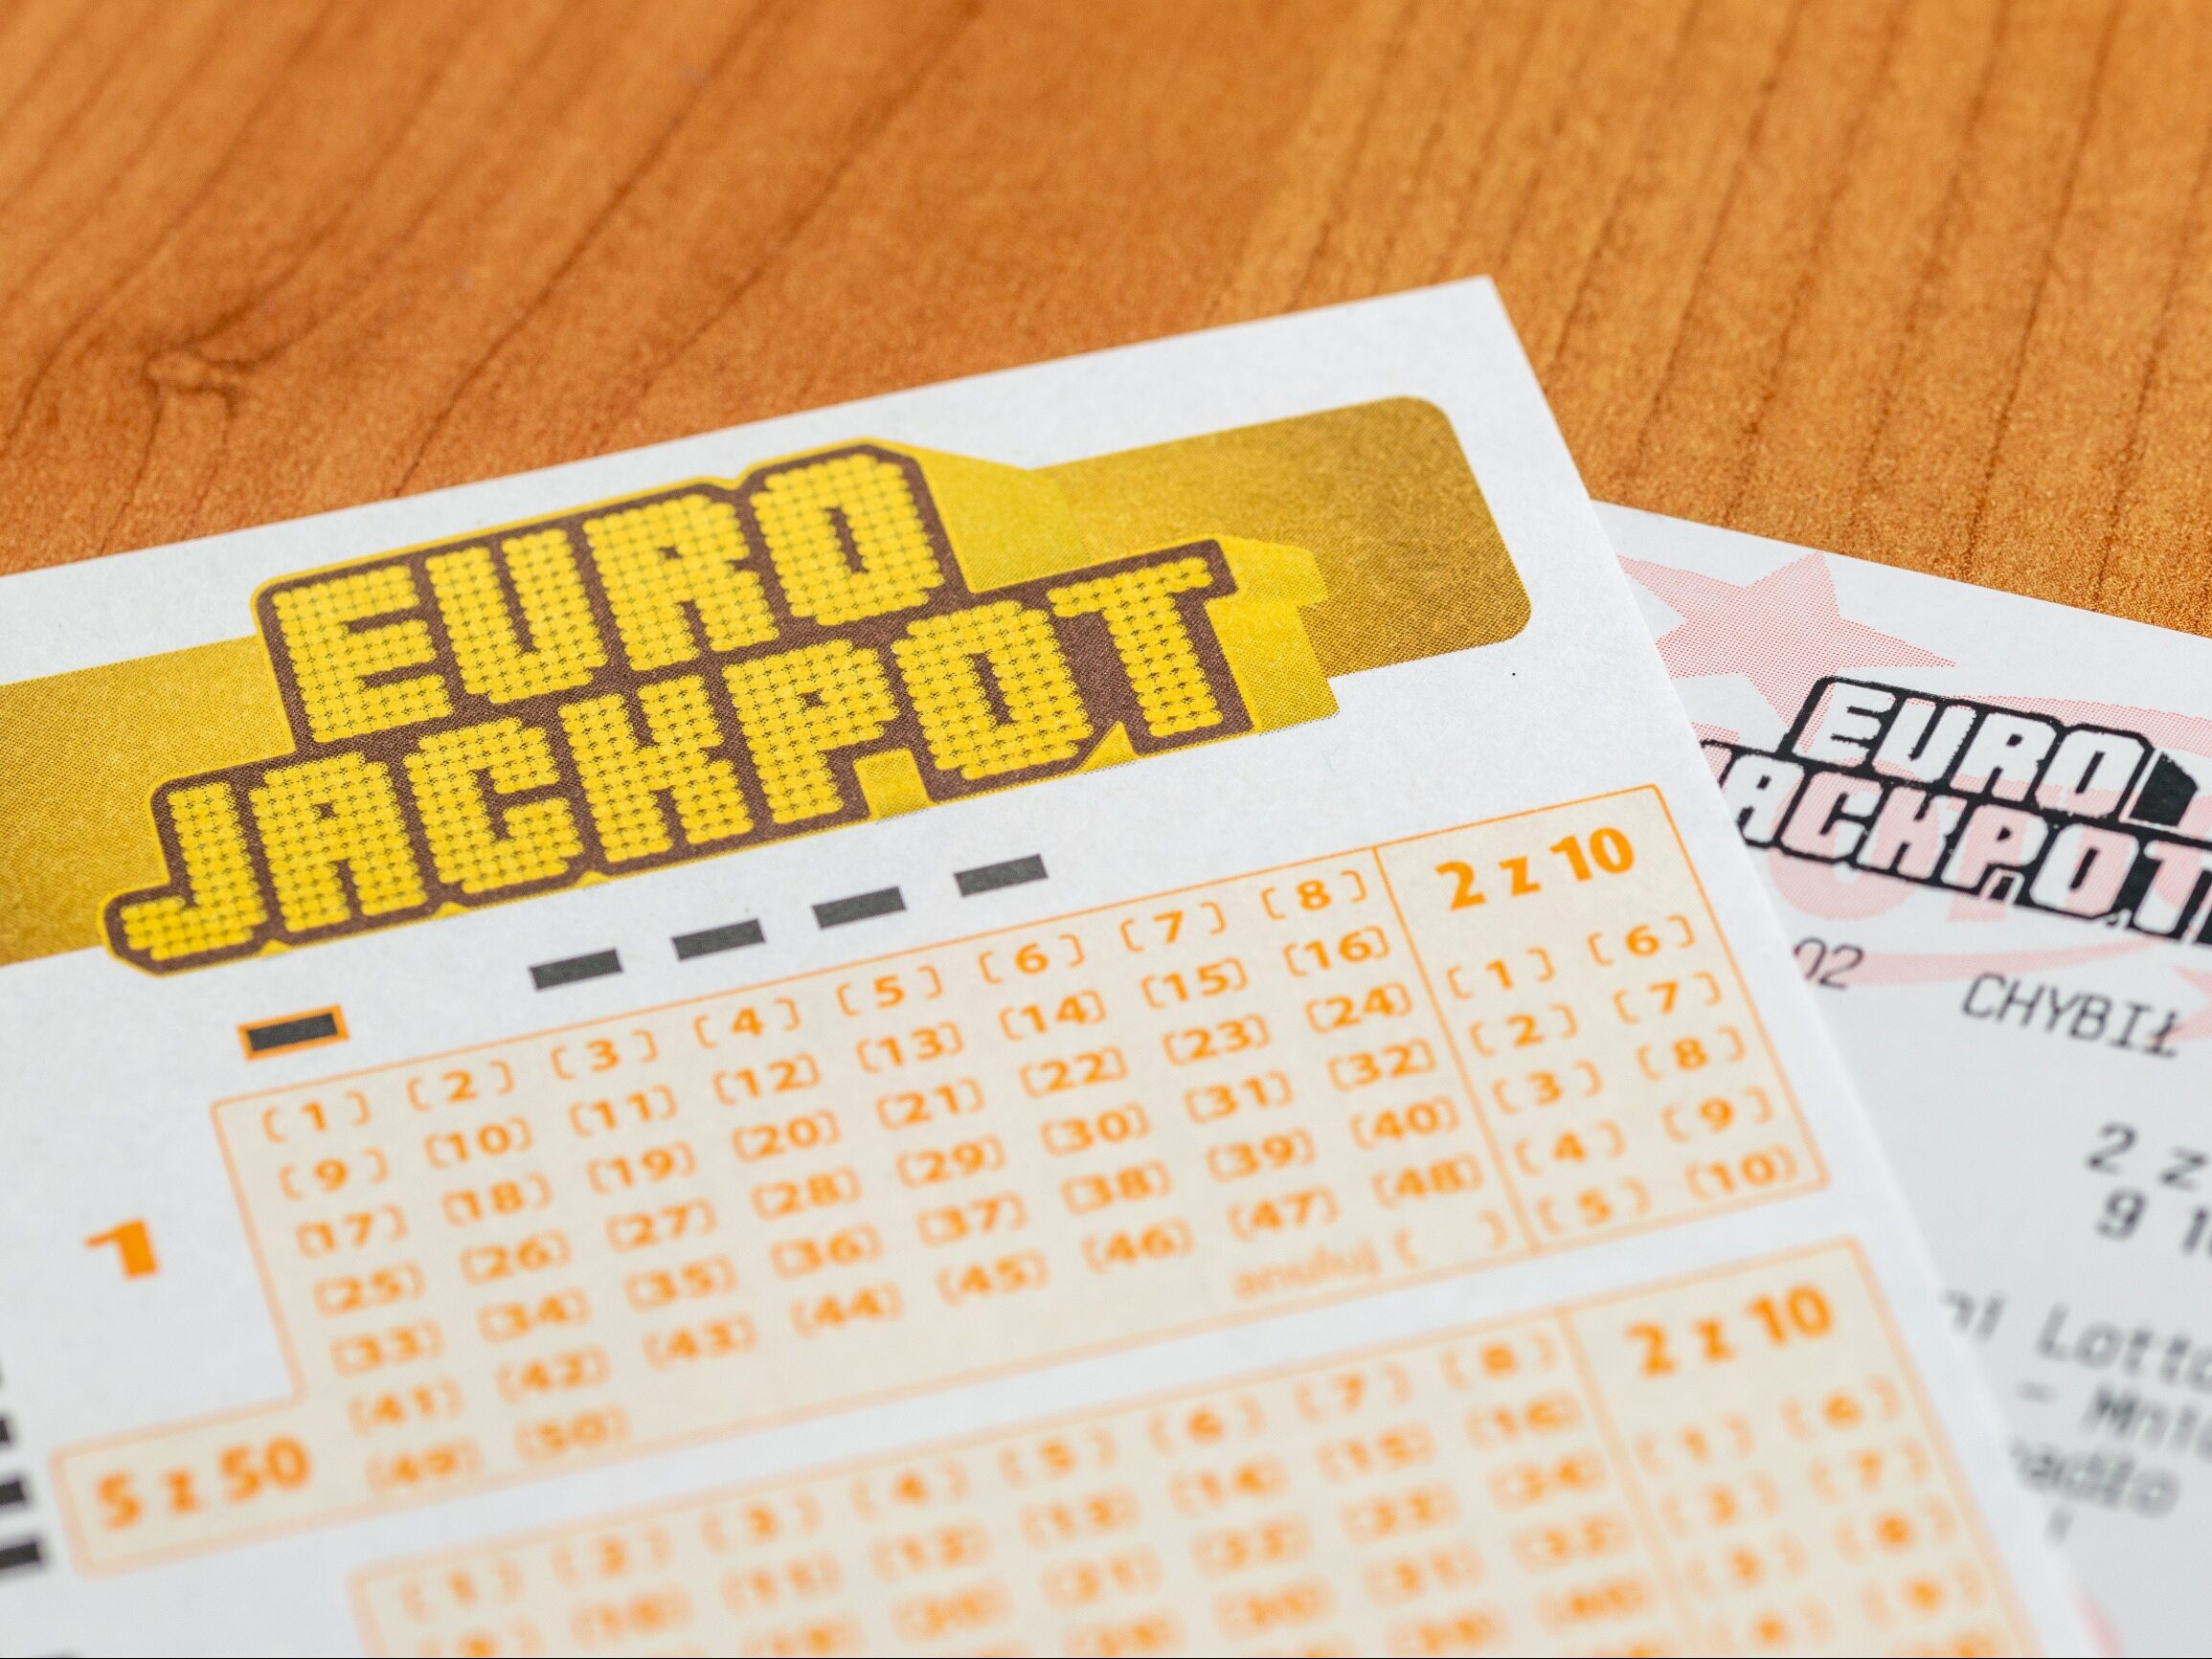 Resultados de Eurojackpot.  ¡Uno de los jugadores tuvo mucha suerte y ganó el premio mayor!  – Empresa y Proust